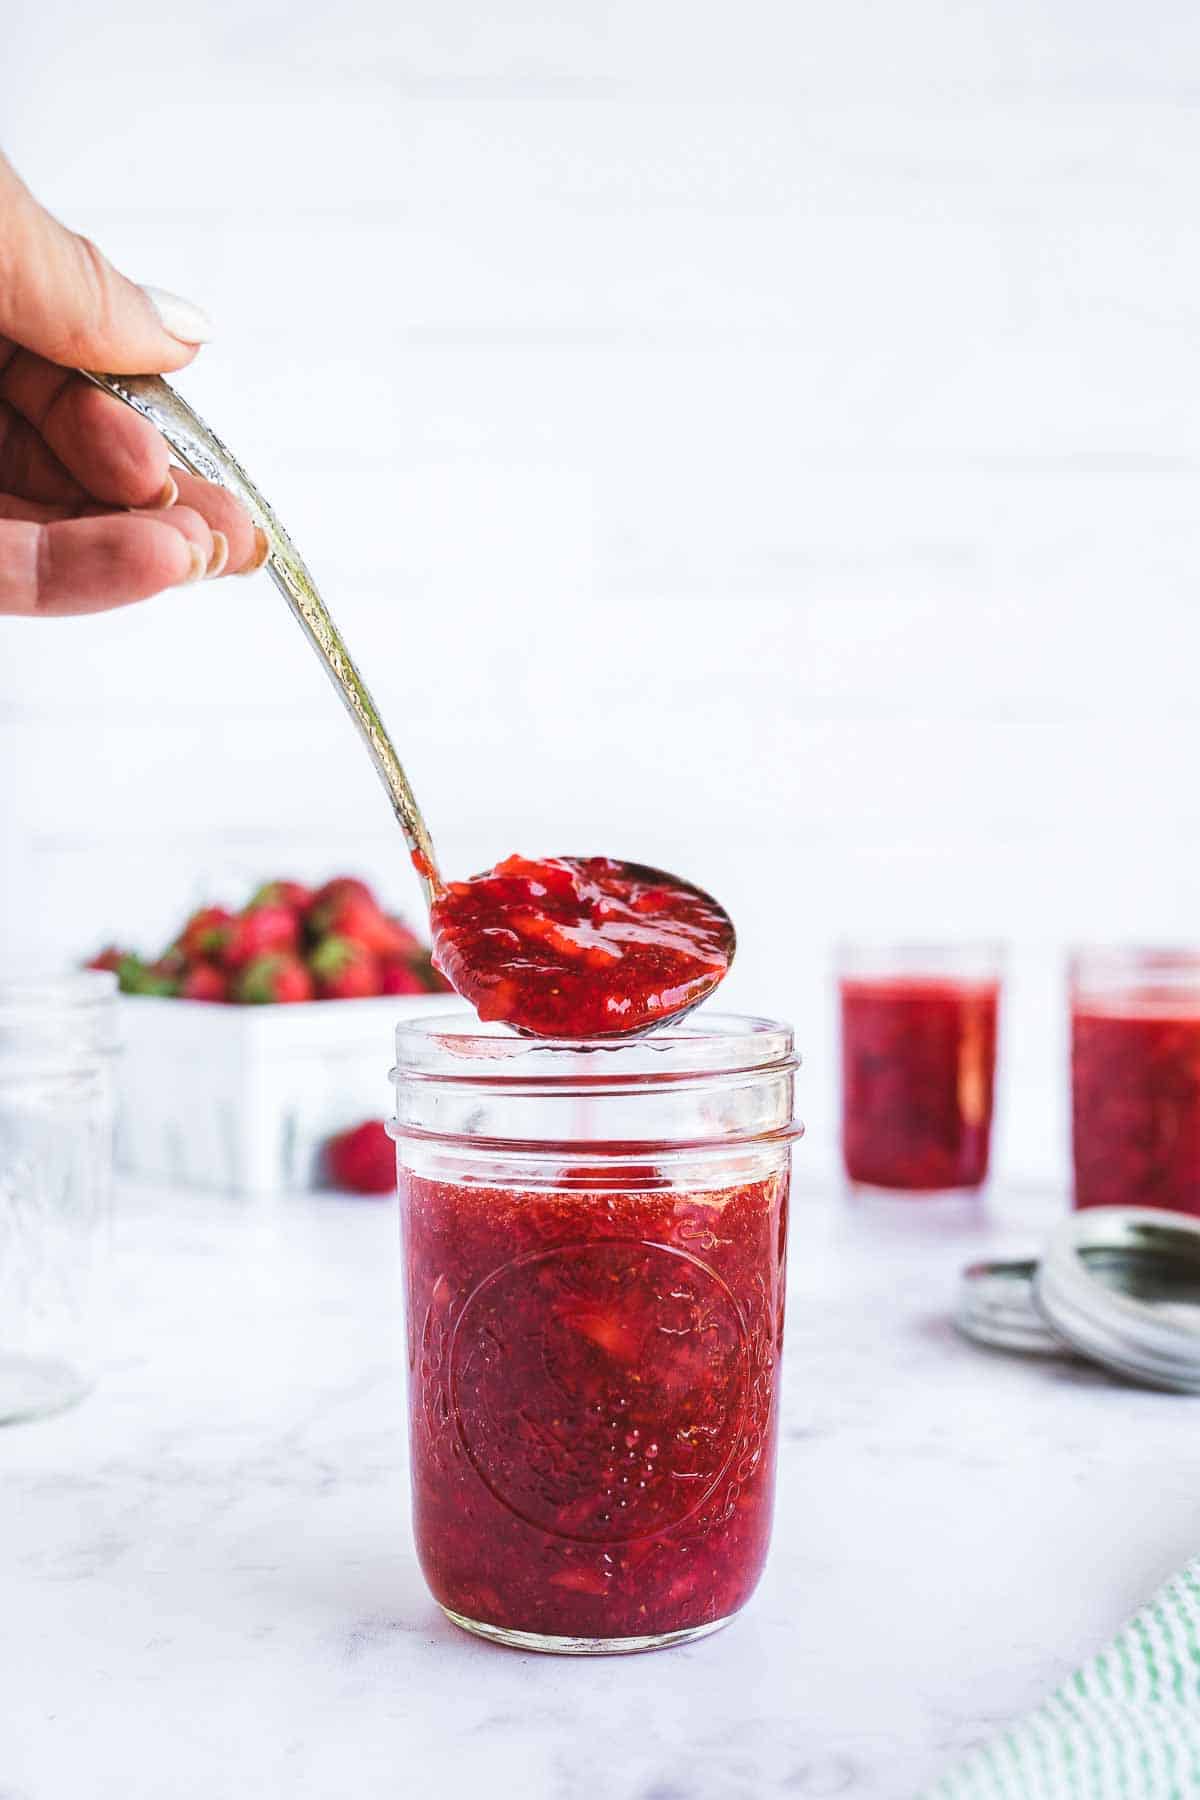 Strawberry freezer jam being ladled into mason jars for freezing.